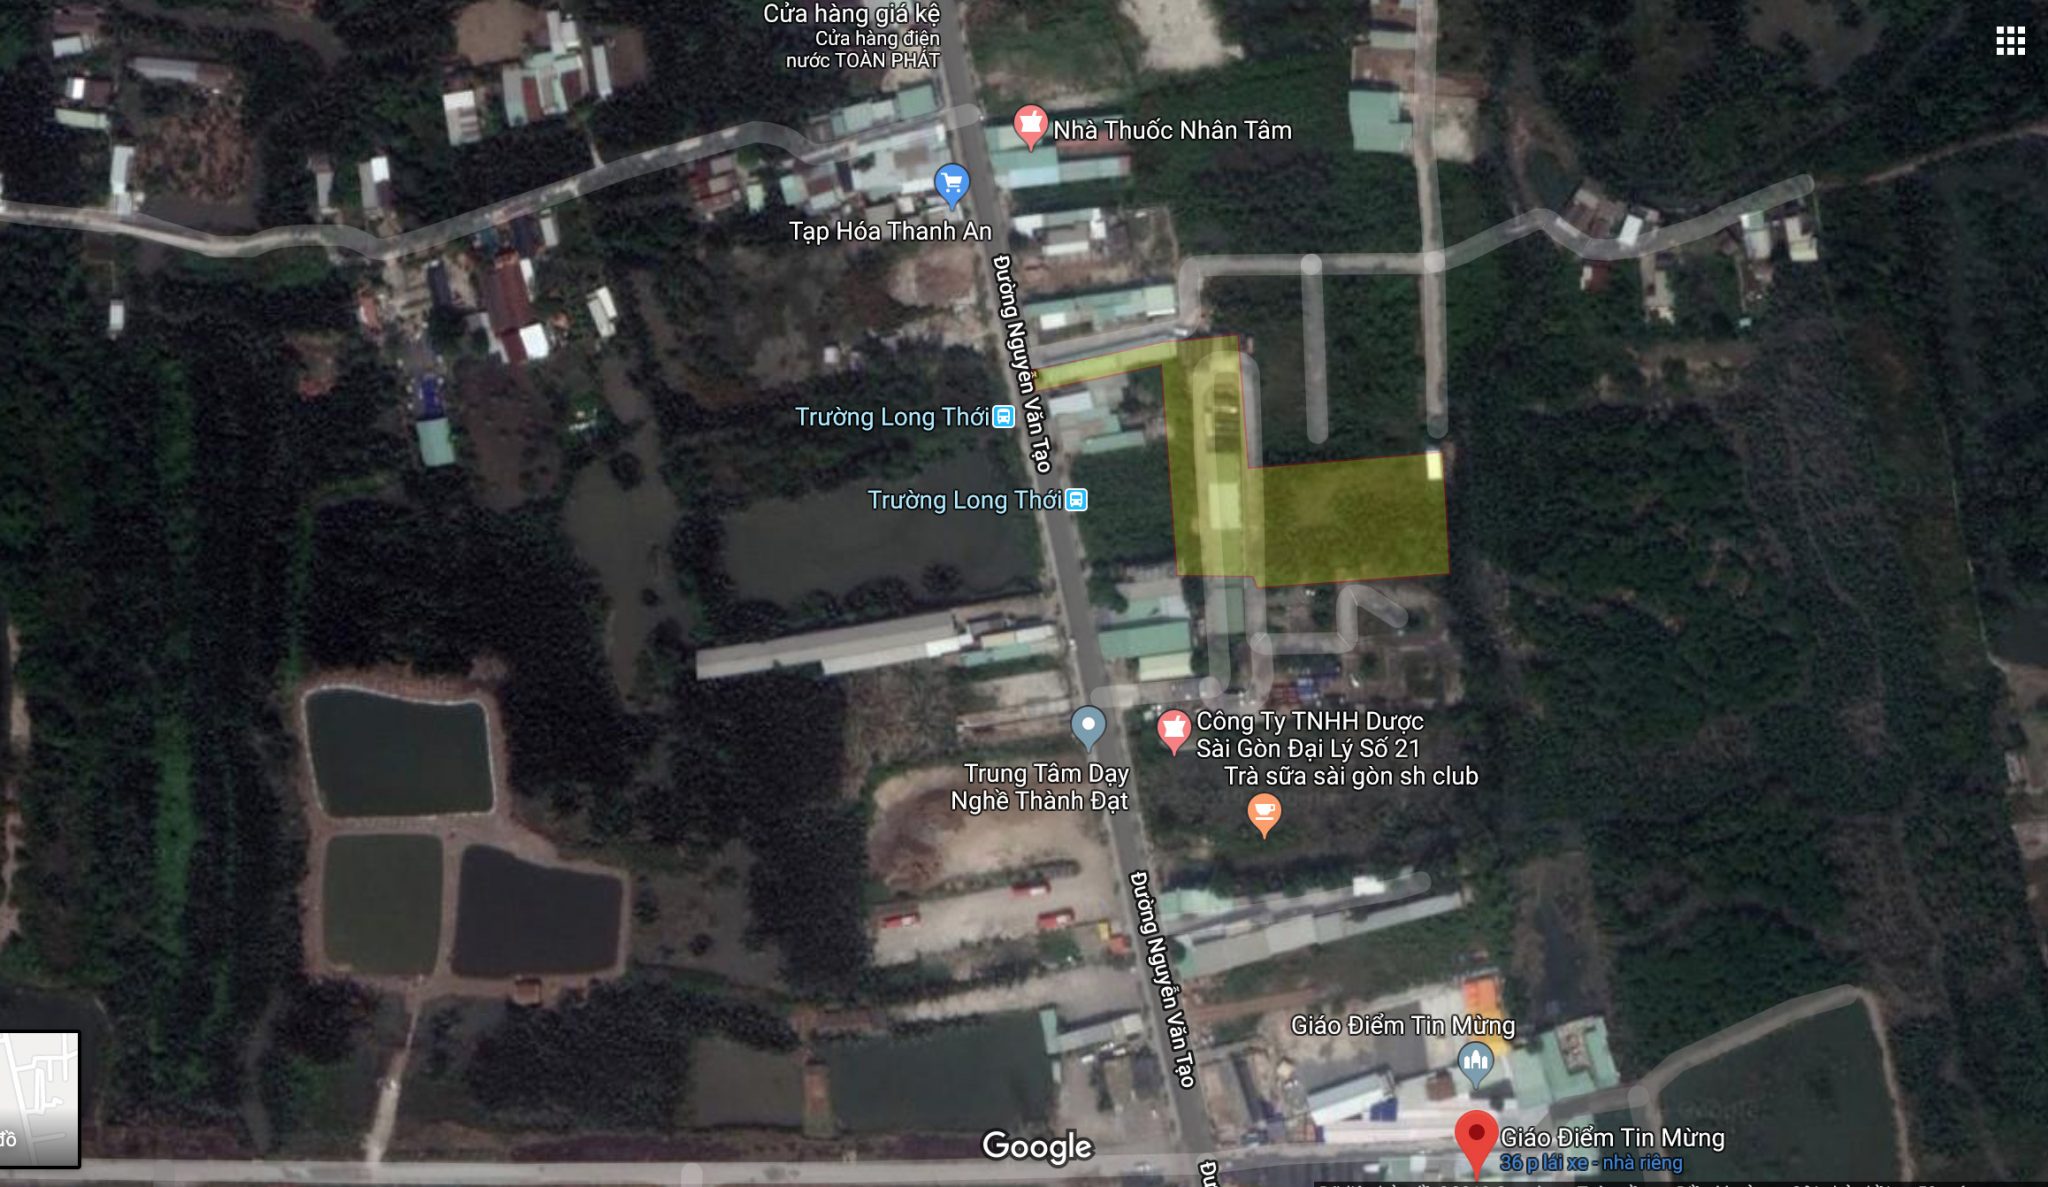 Cho thuê 2400 m2 đất và nhà xưởng mặt tiền Nguyễn Văn Tạo Nhà Bè Dat Nha Be Giao diem tin mung 1